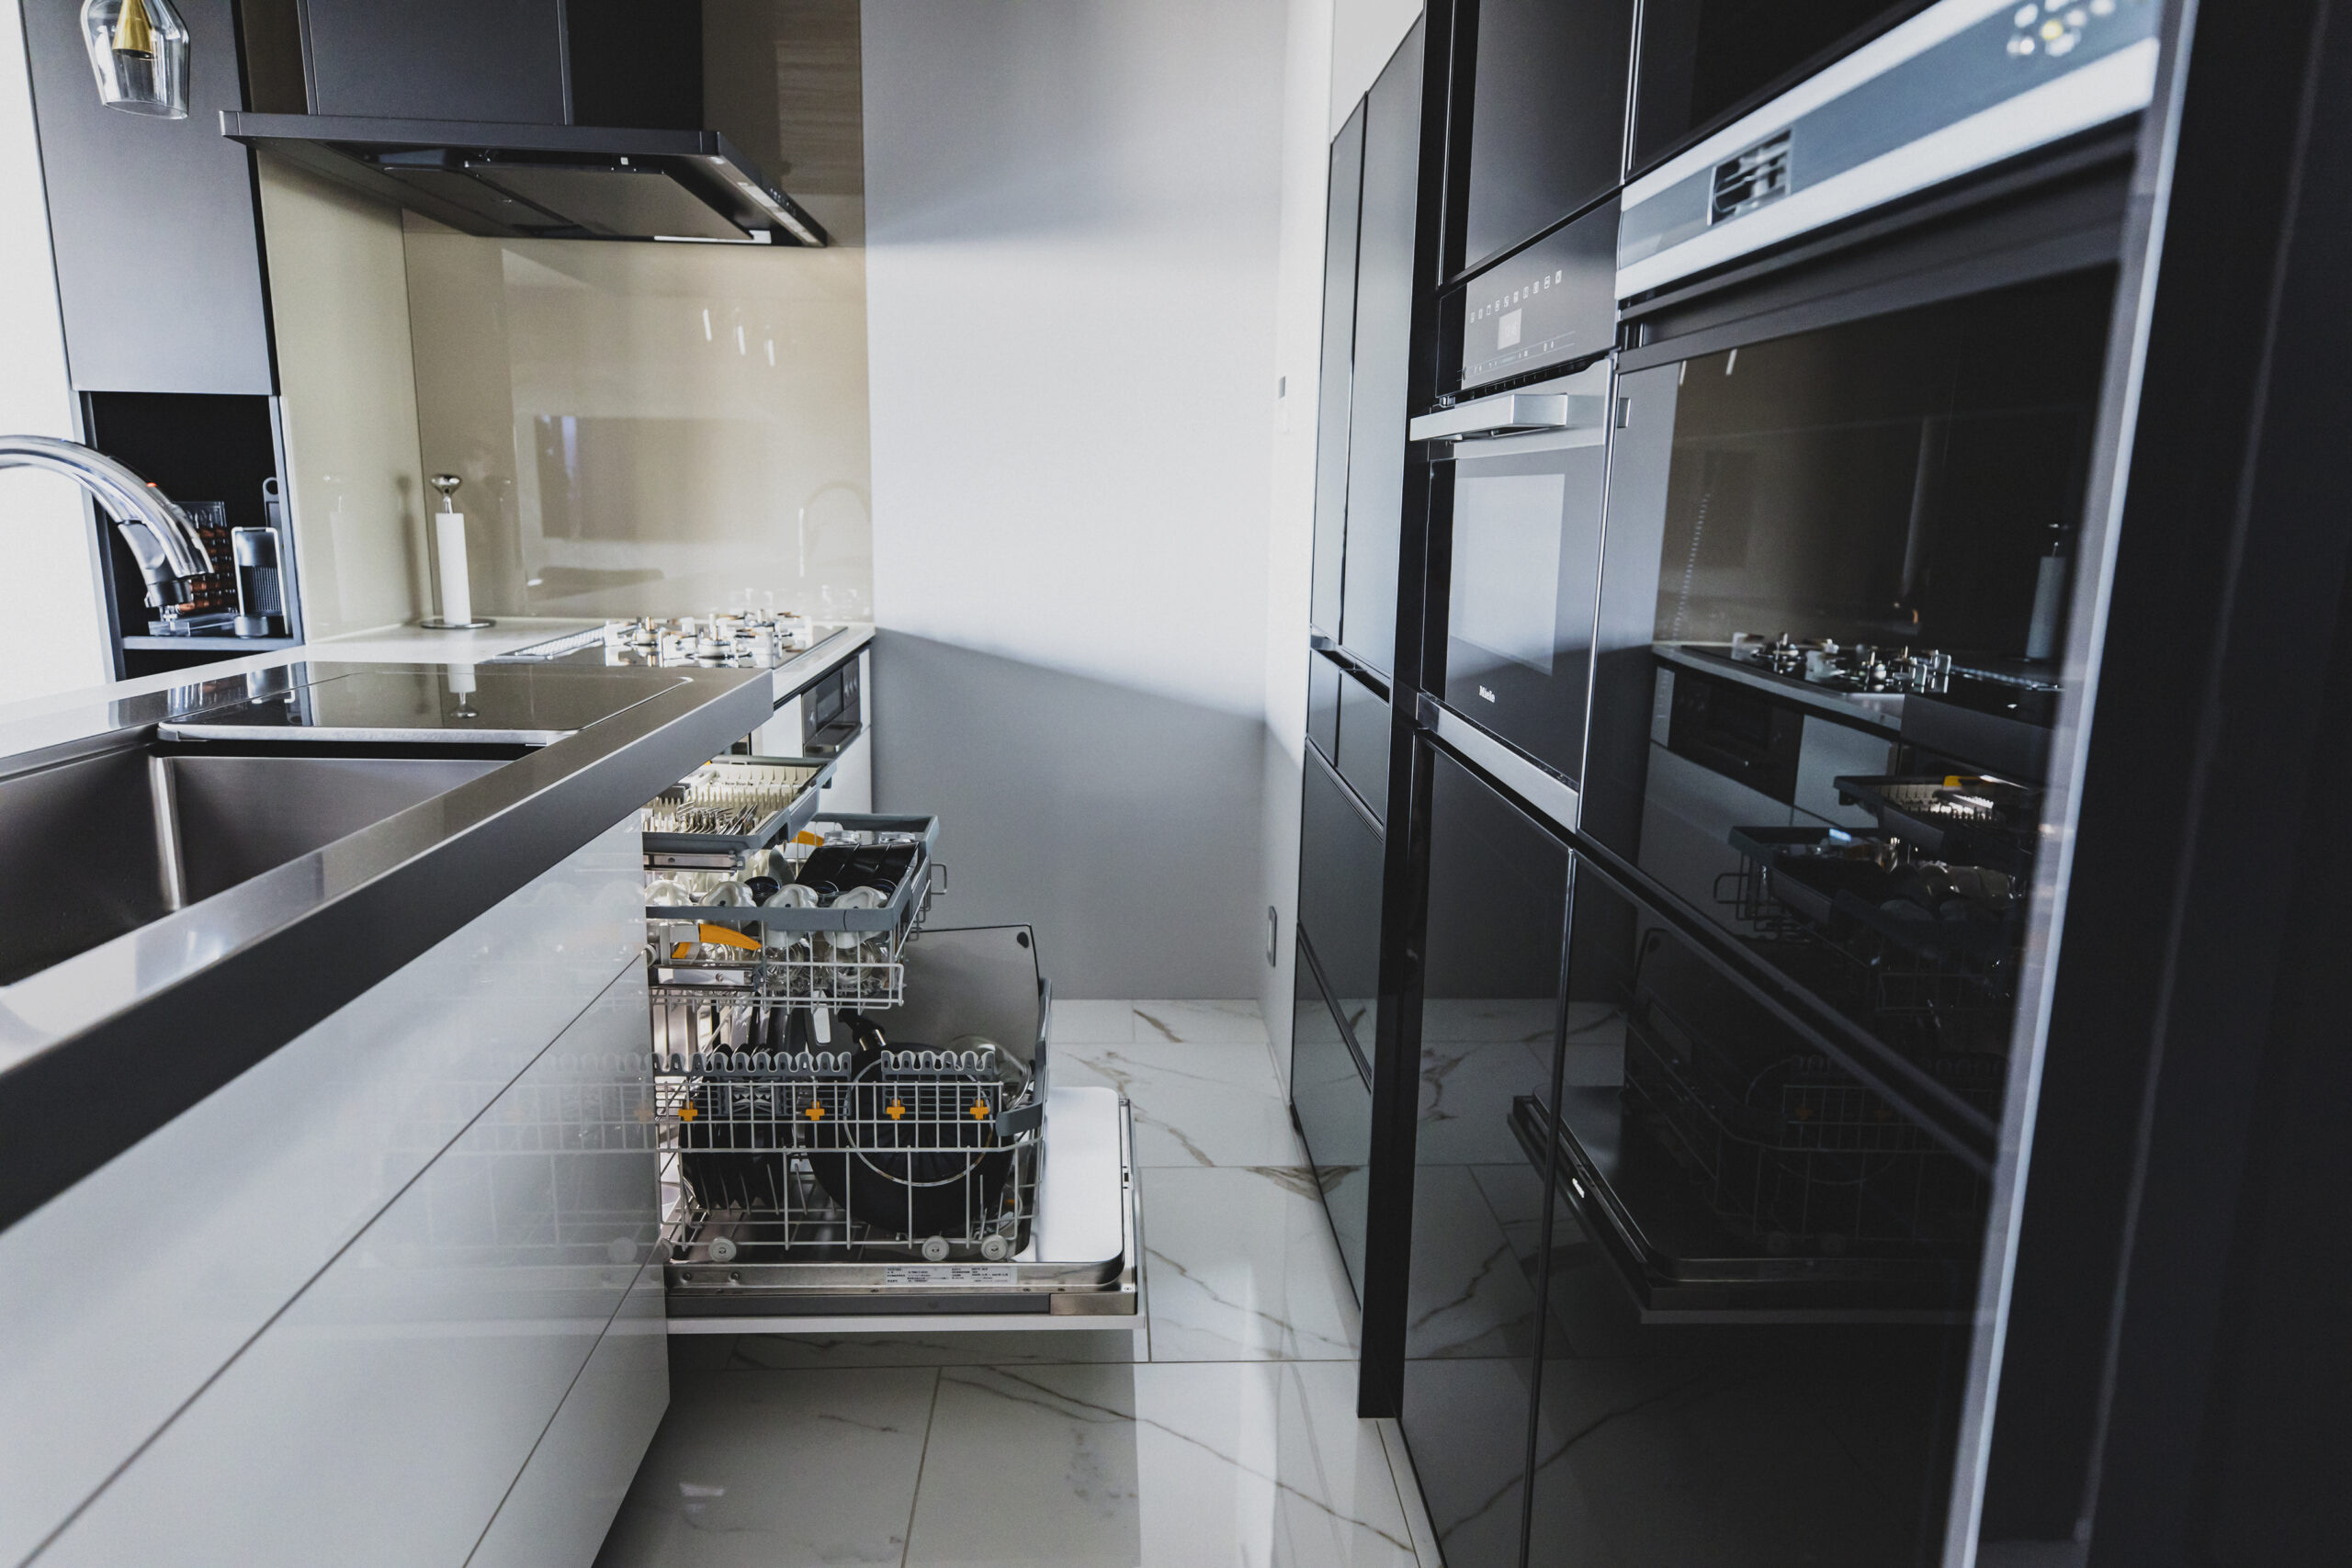 ミーレ食器洗い機とオーブンのあるキッチン